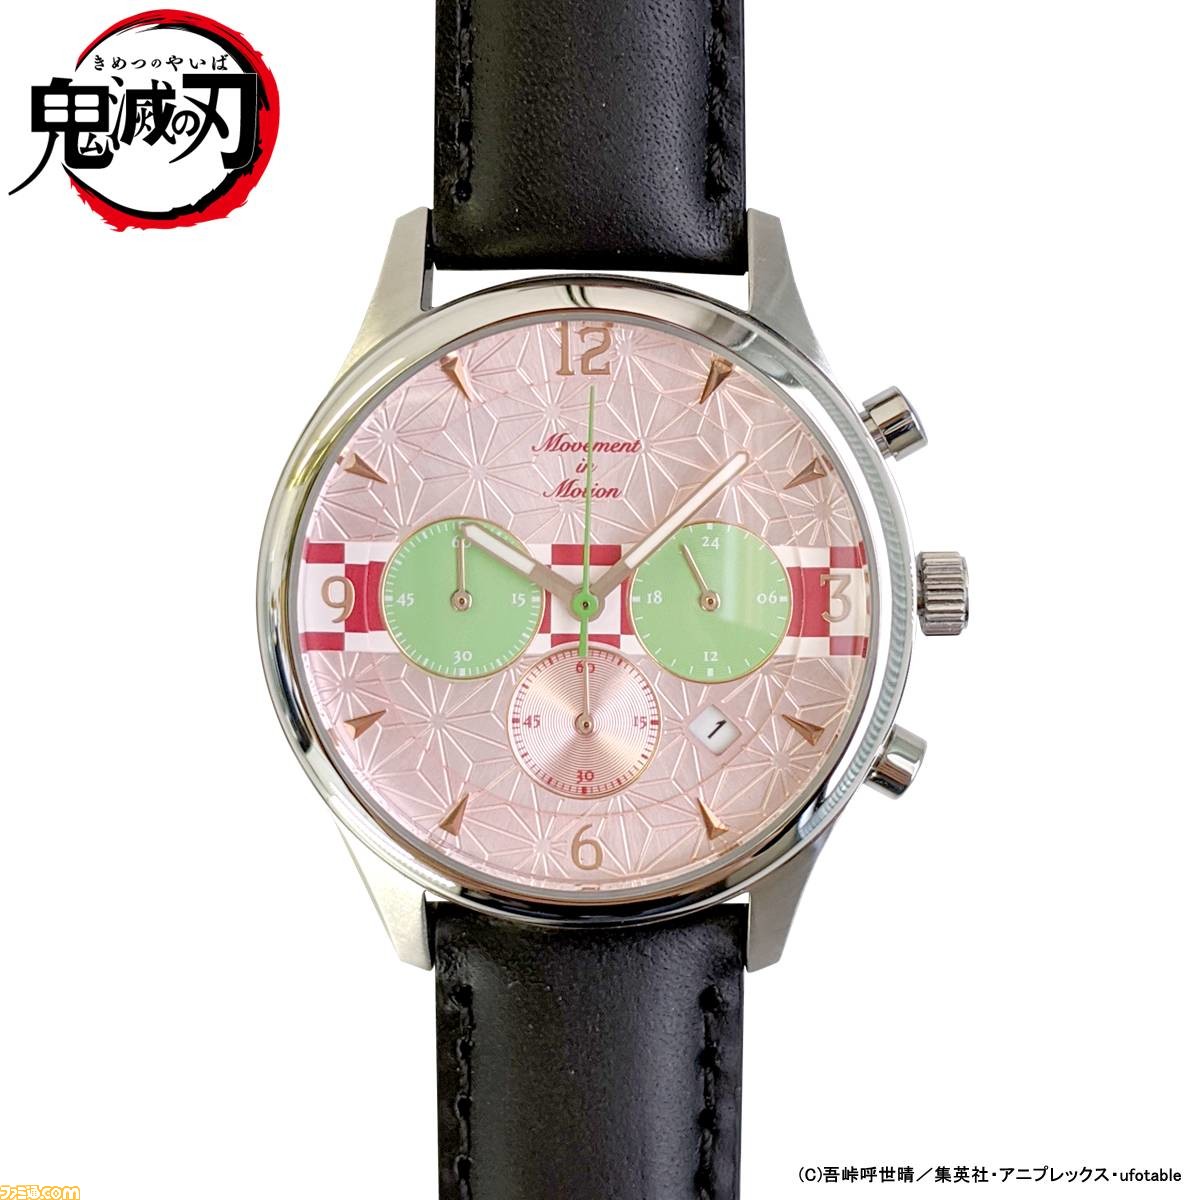 鬼滅の刃』×“TiCTAC”コラボ腕時計11月1日発売。炭治郎や禰豆子、善逸 